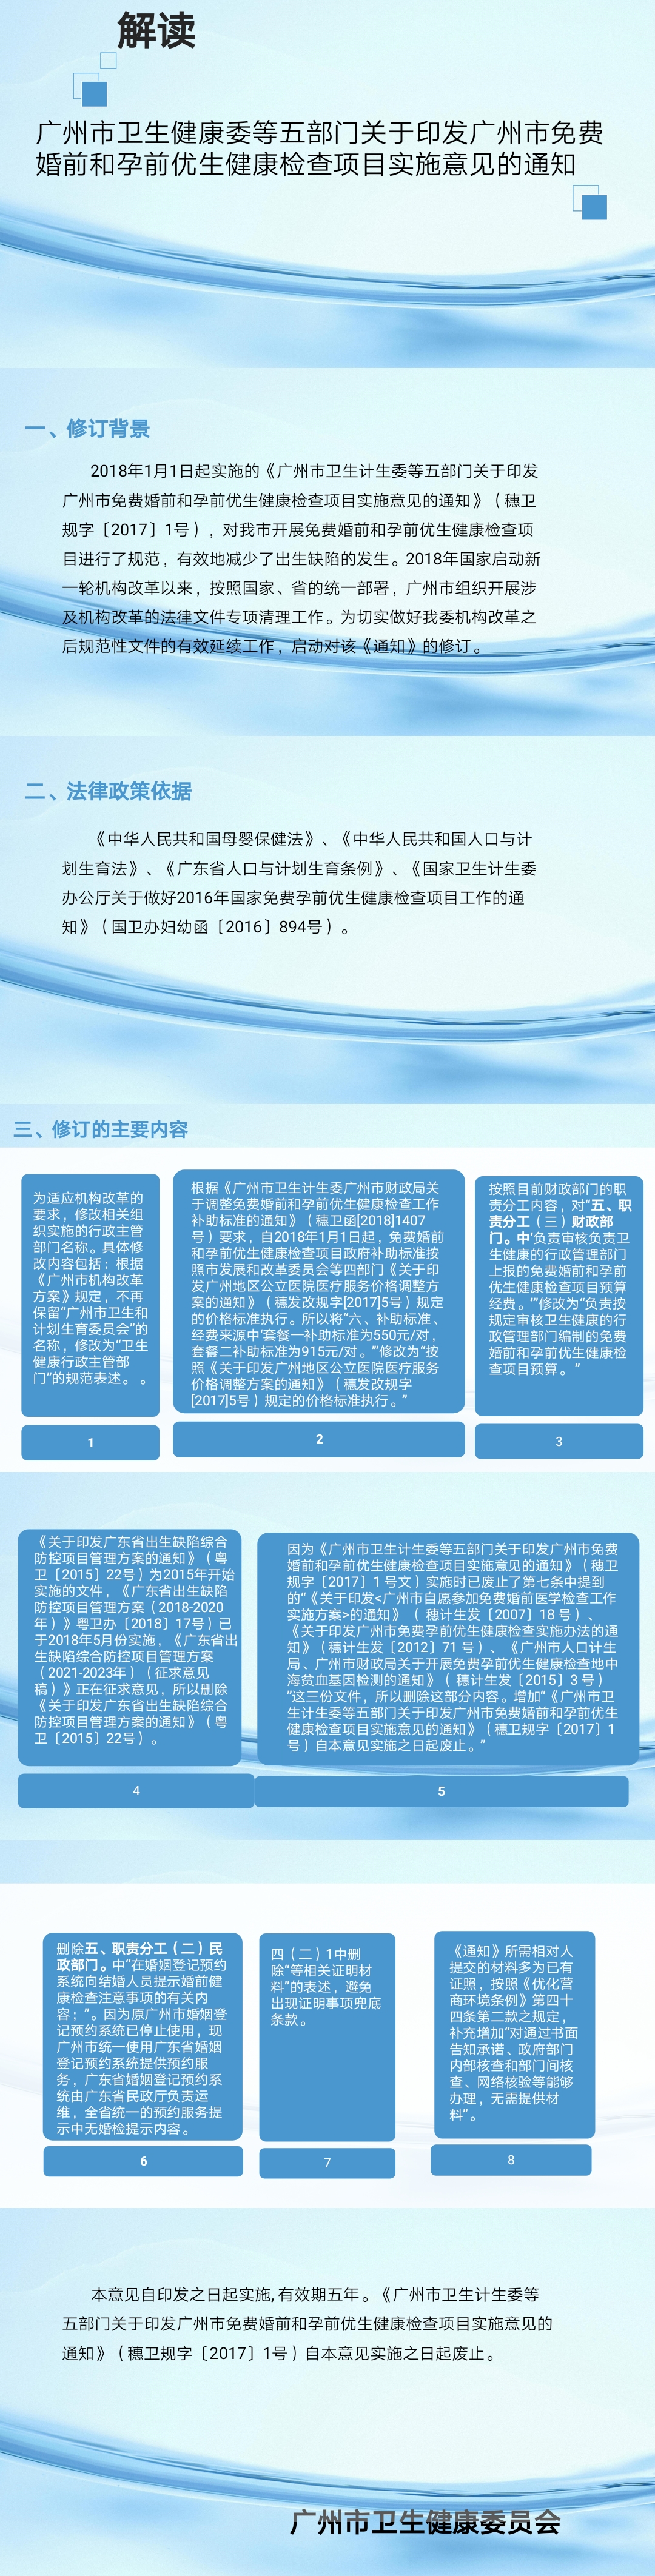 《广州市卫生健康委等五部门关于印发广州市免费婚前和孕前优生健康检查项目实施意见的通知》的政策解读材料-图解.jpg